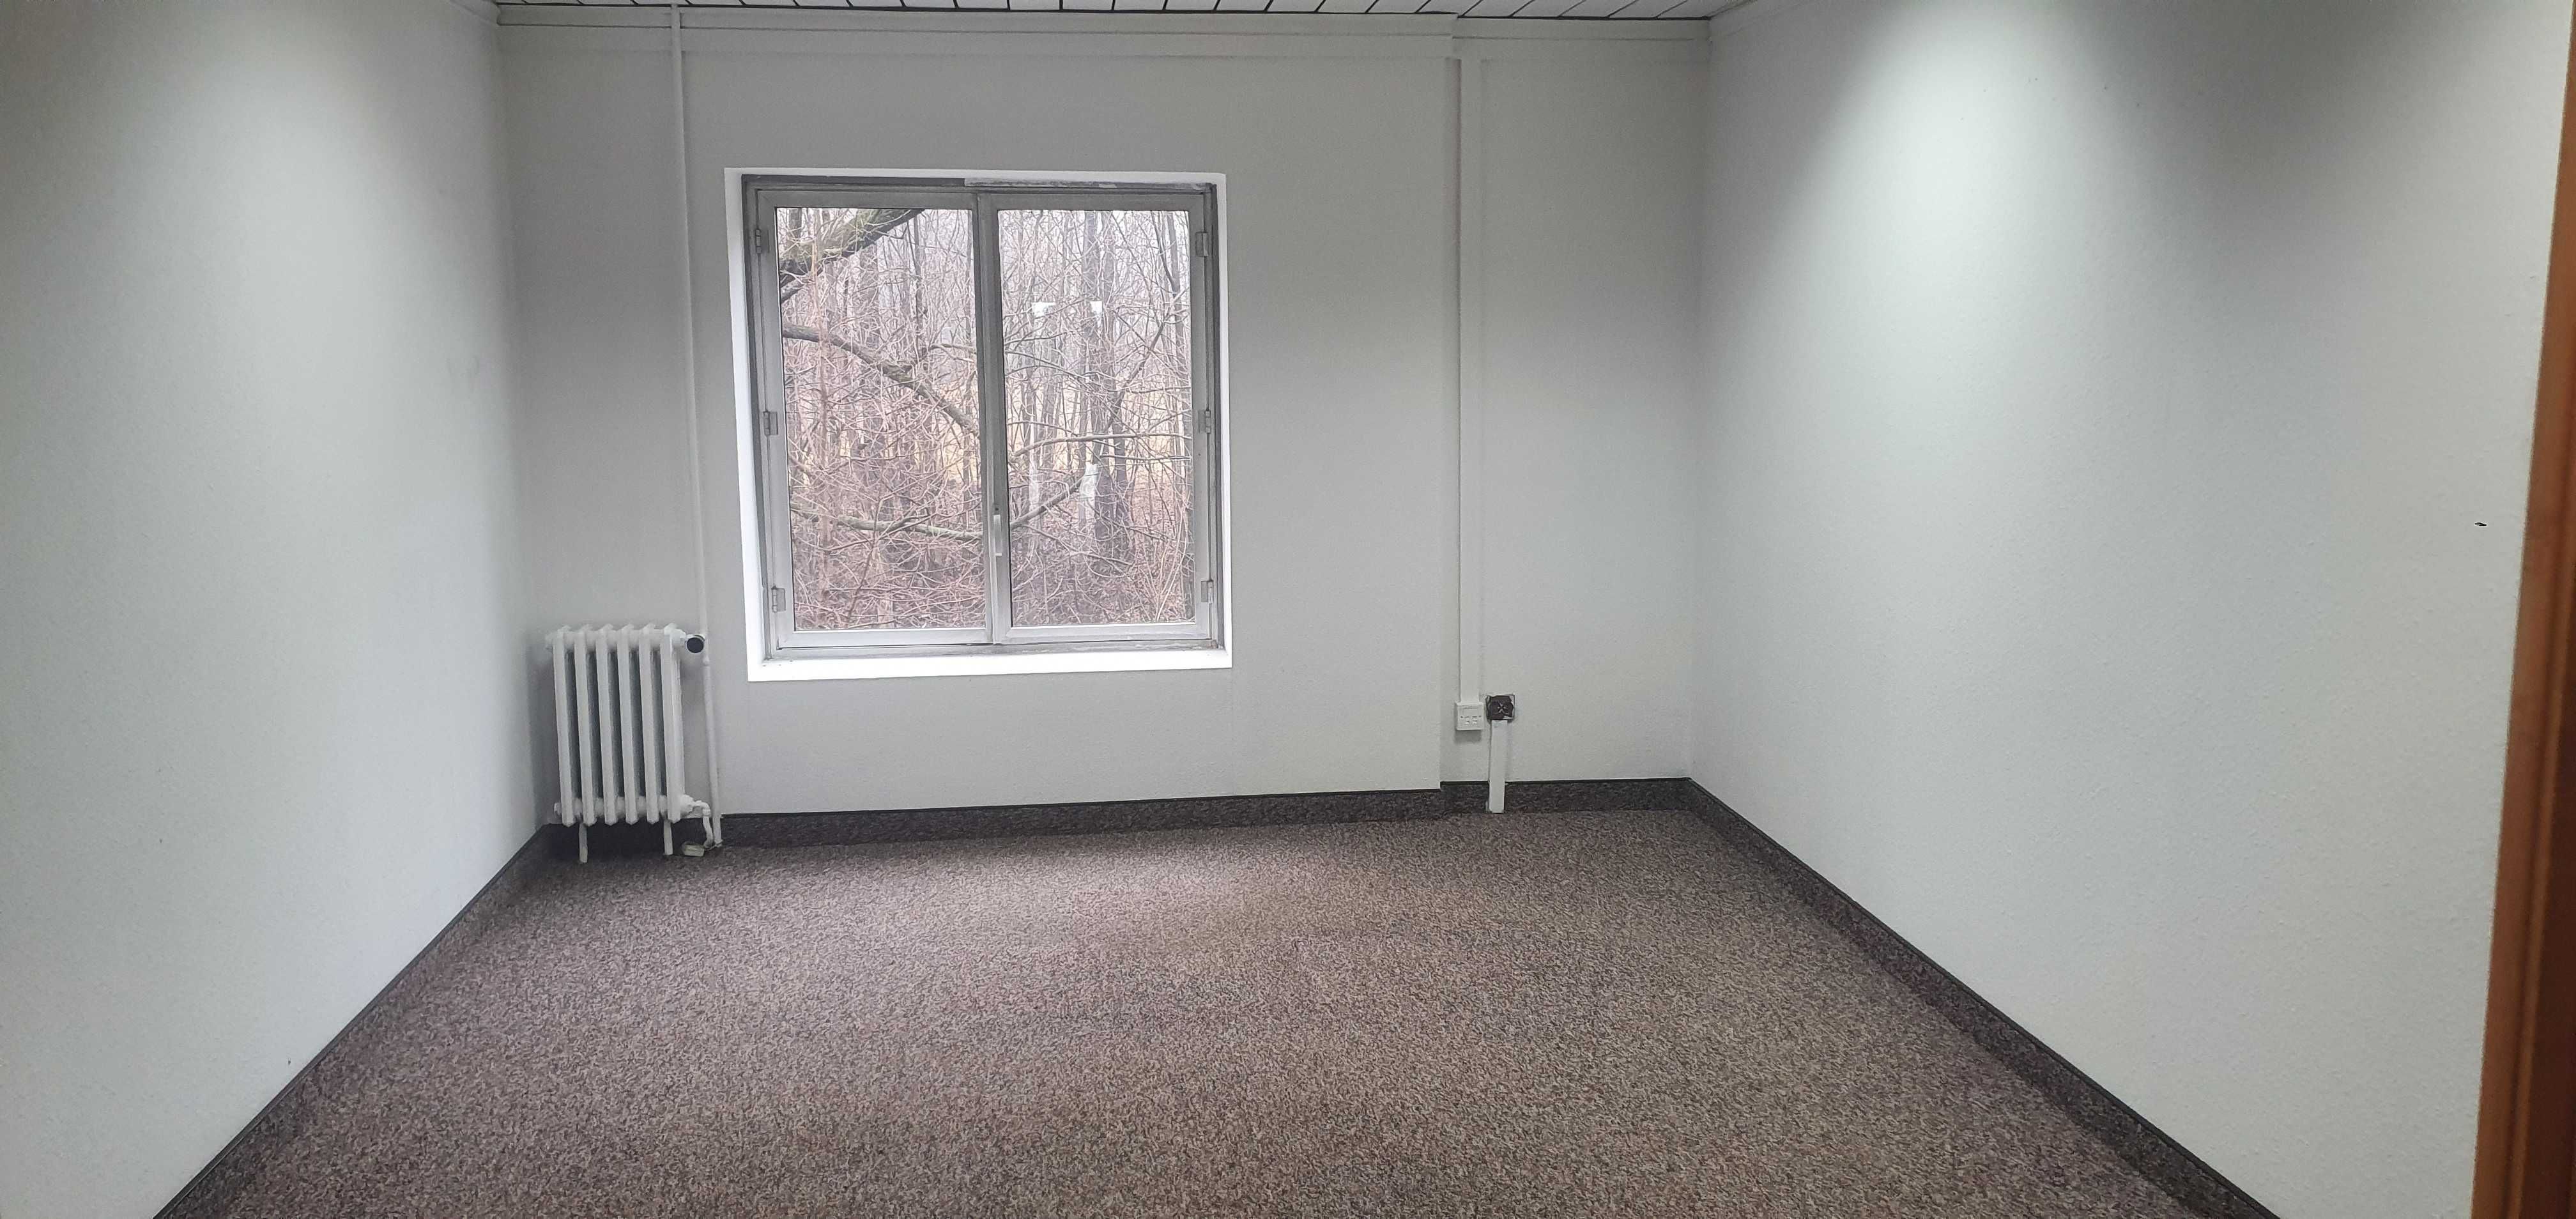 Biuro 16 m2 2 piętro - świetna lokalizacja Bielsko-Biała obwodnica